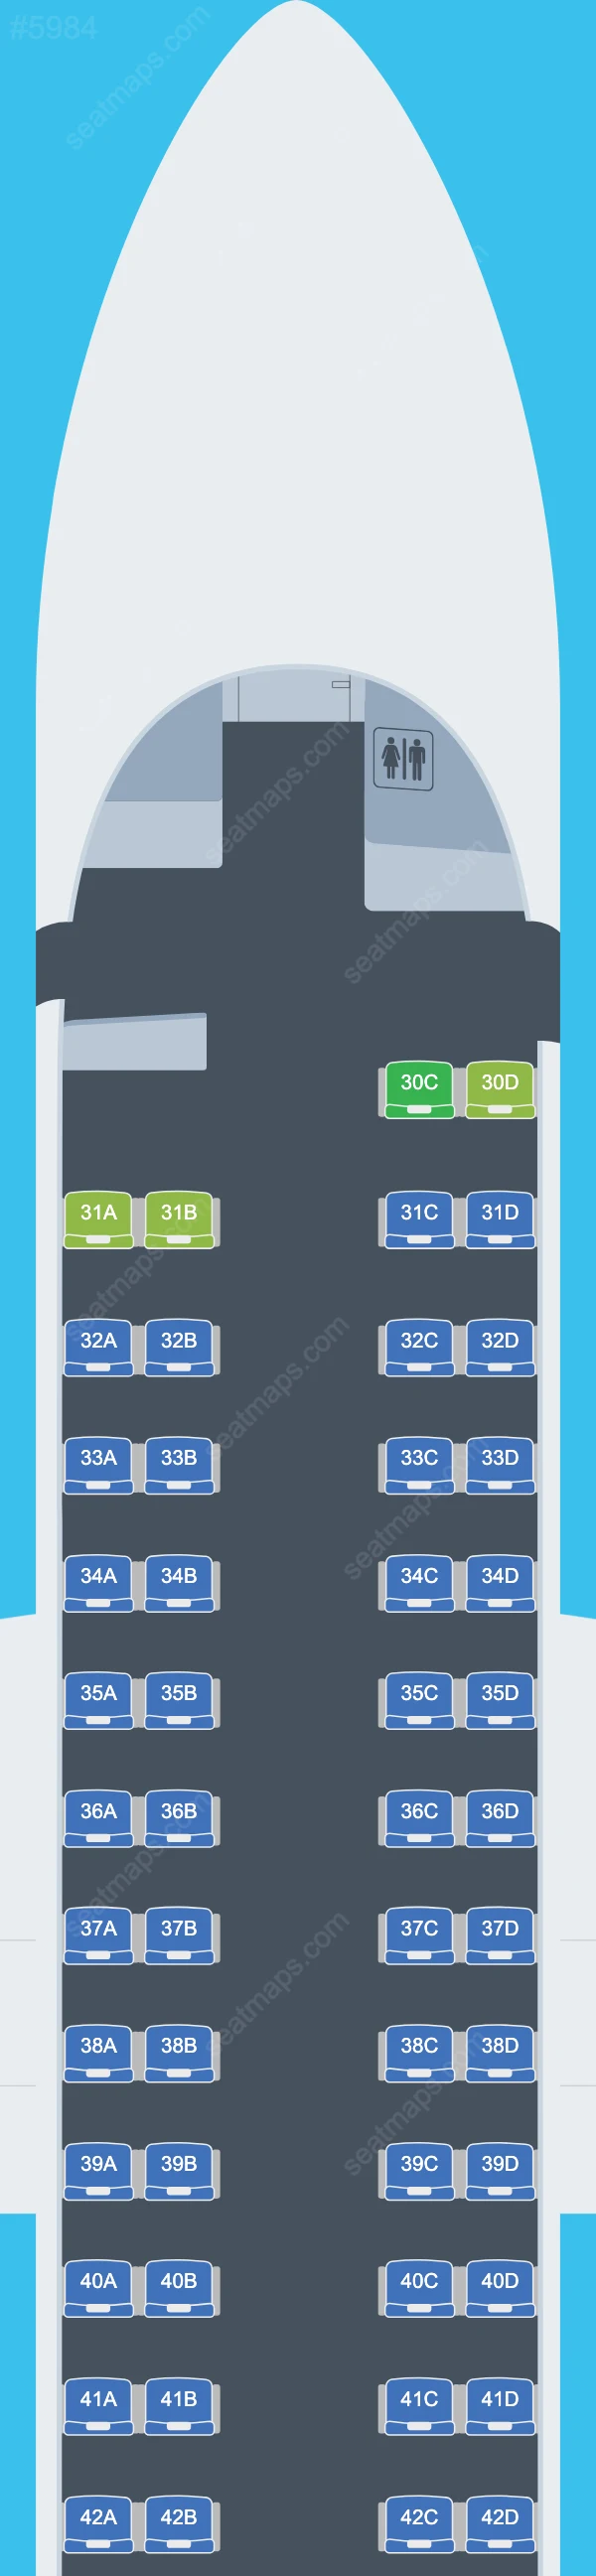 Nok Air Bombardier Q400 Seat Maps Q400